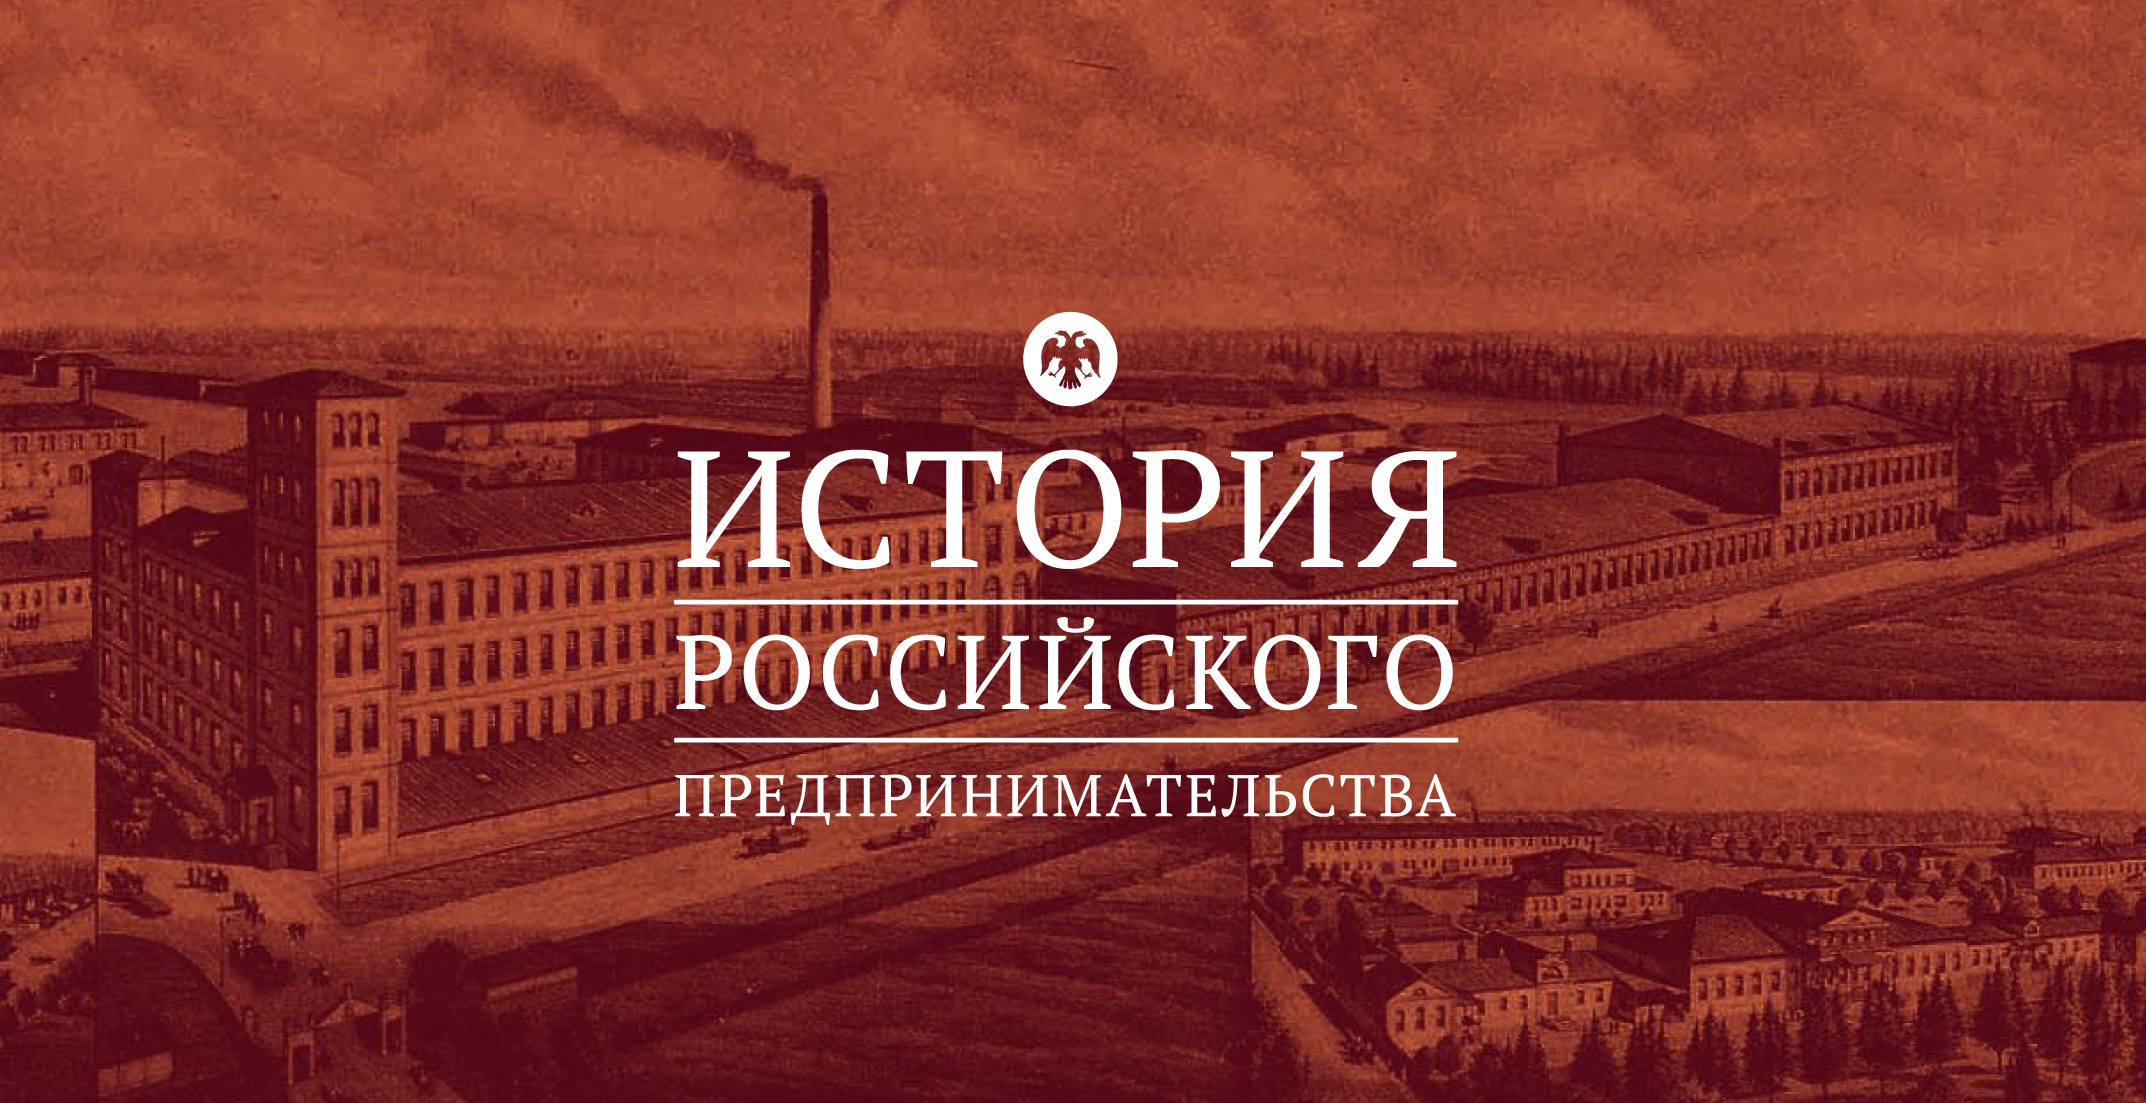 В России проходит конкурс по истории предпринимательства